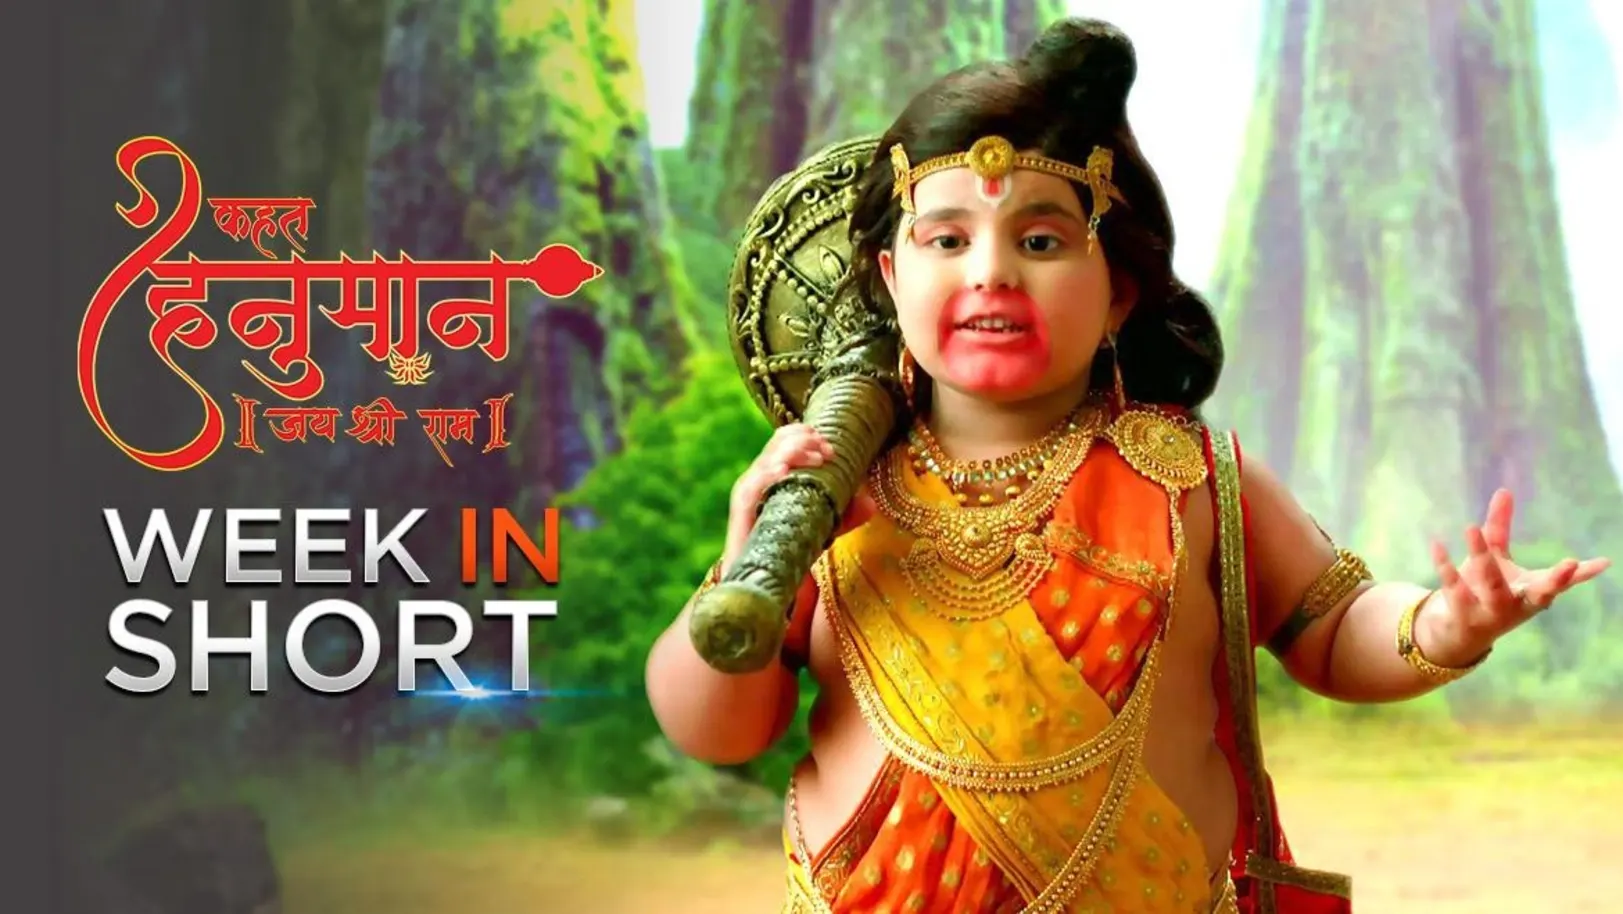 Week in Short - Kahat Hanuman Jai Shri Ram 24th August 2020 to 28th August 2020 29th August 2020 Webisode